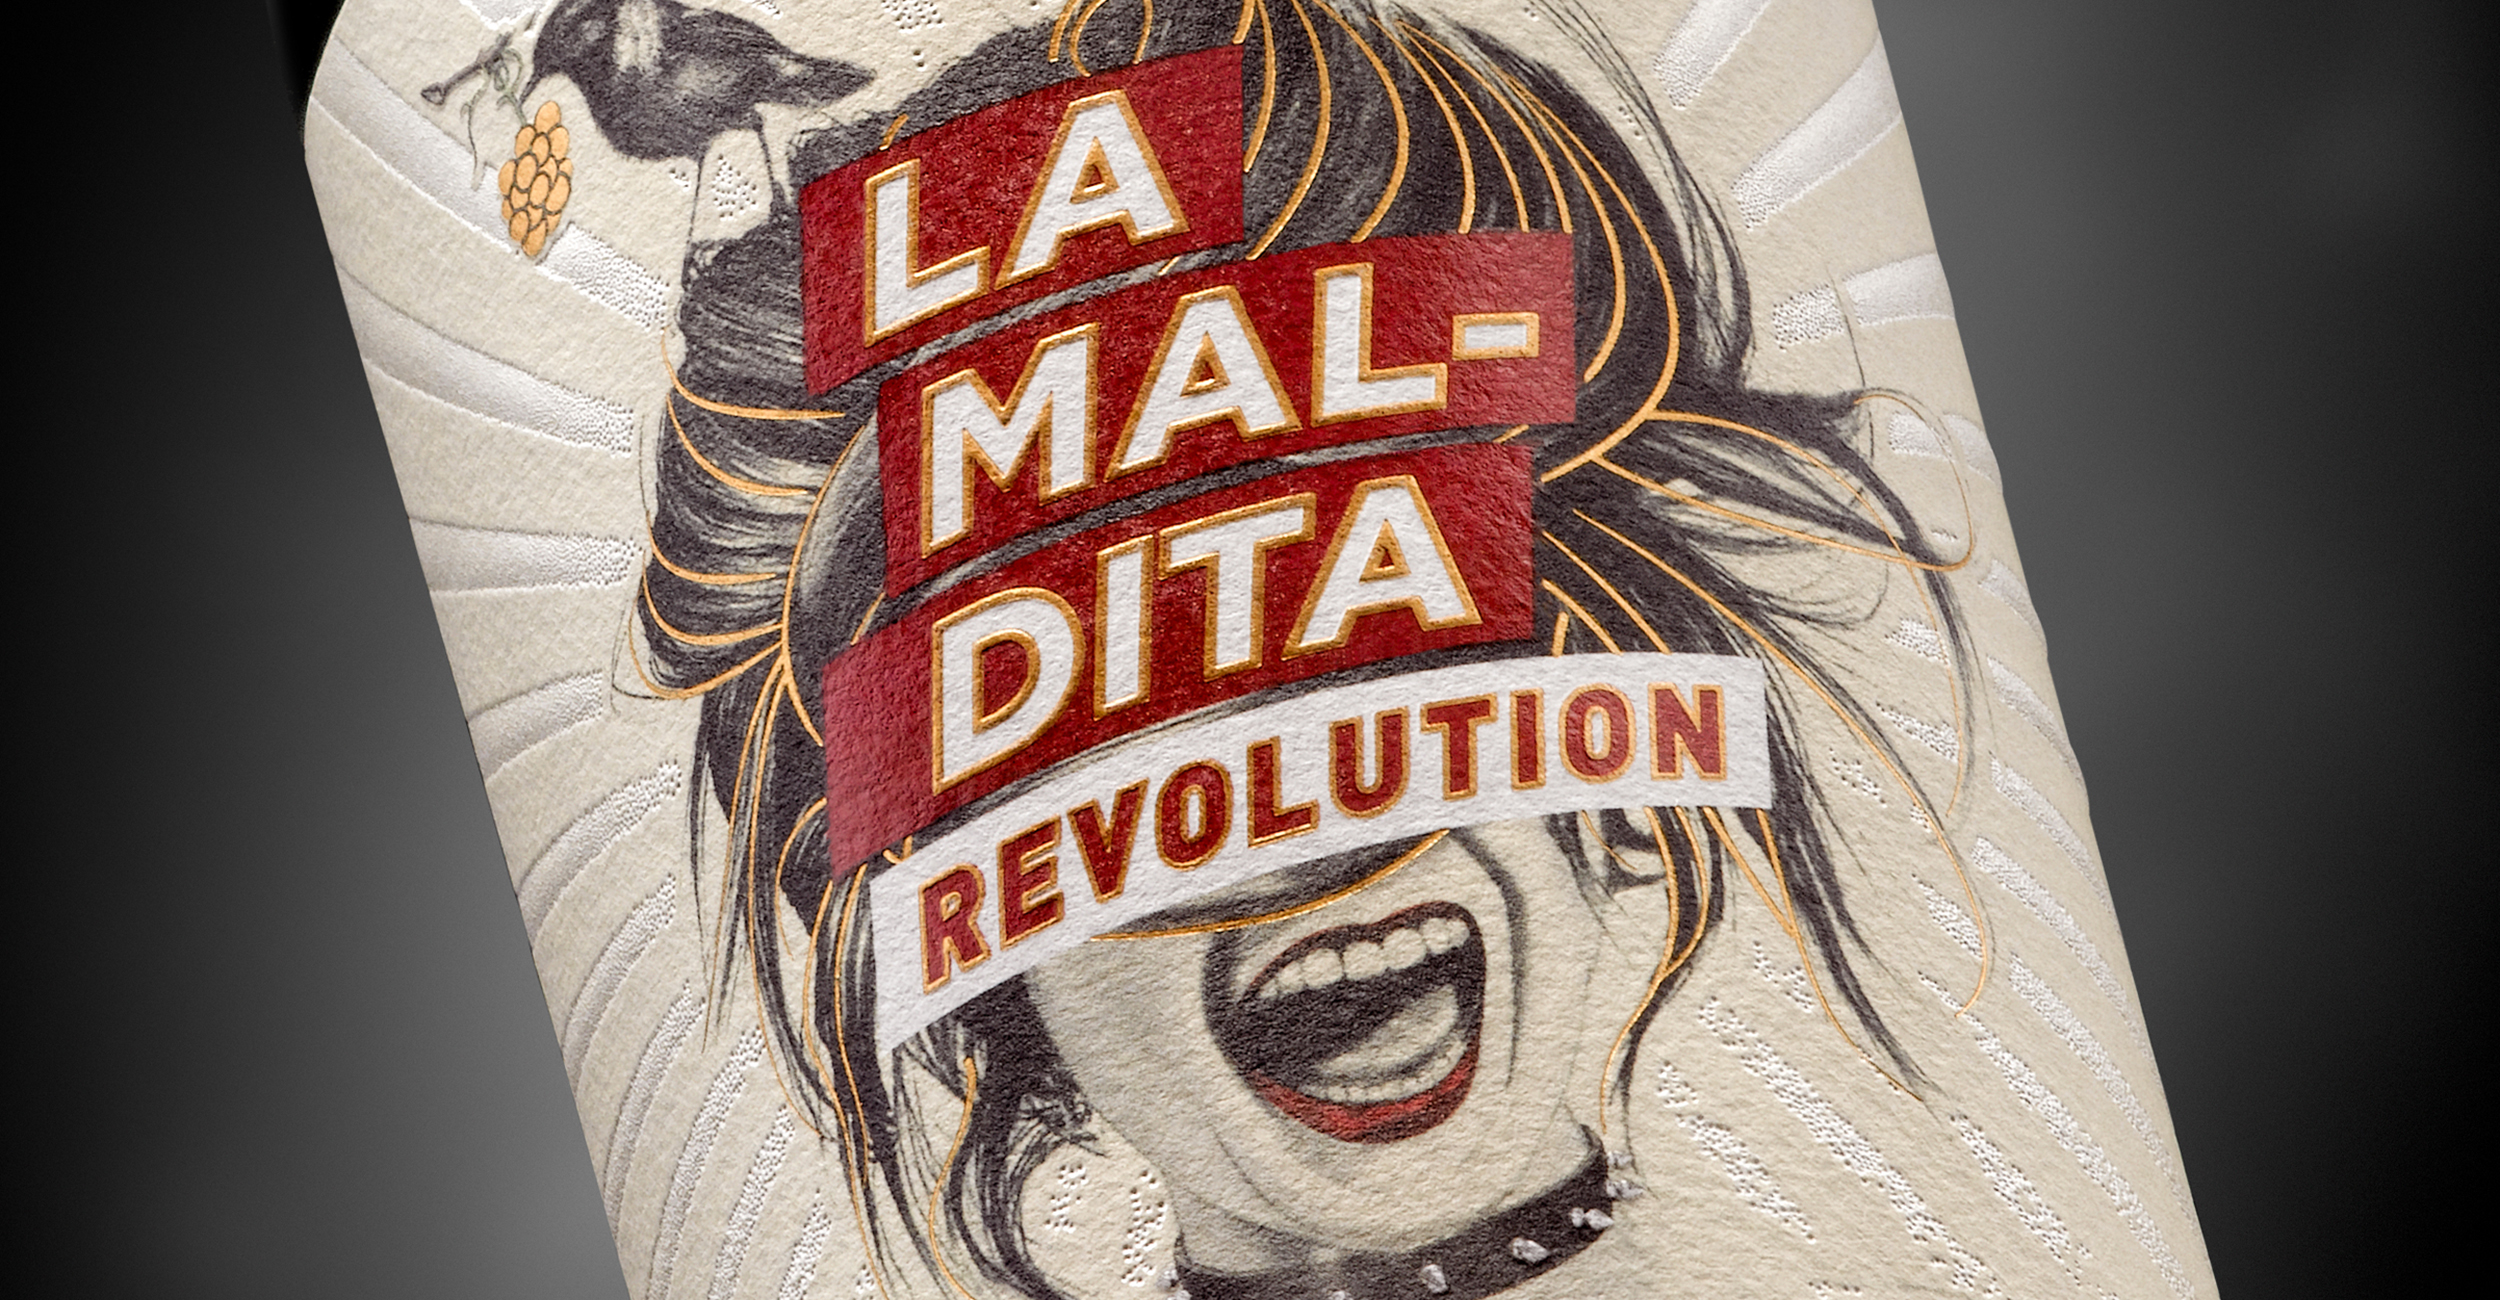 La Maldita Revolution